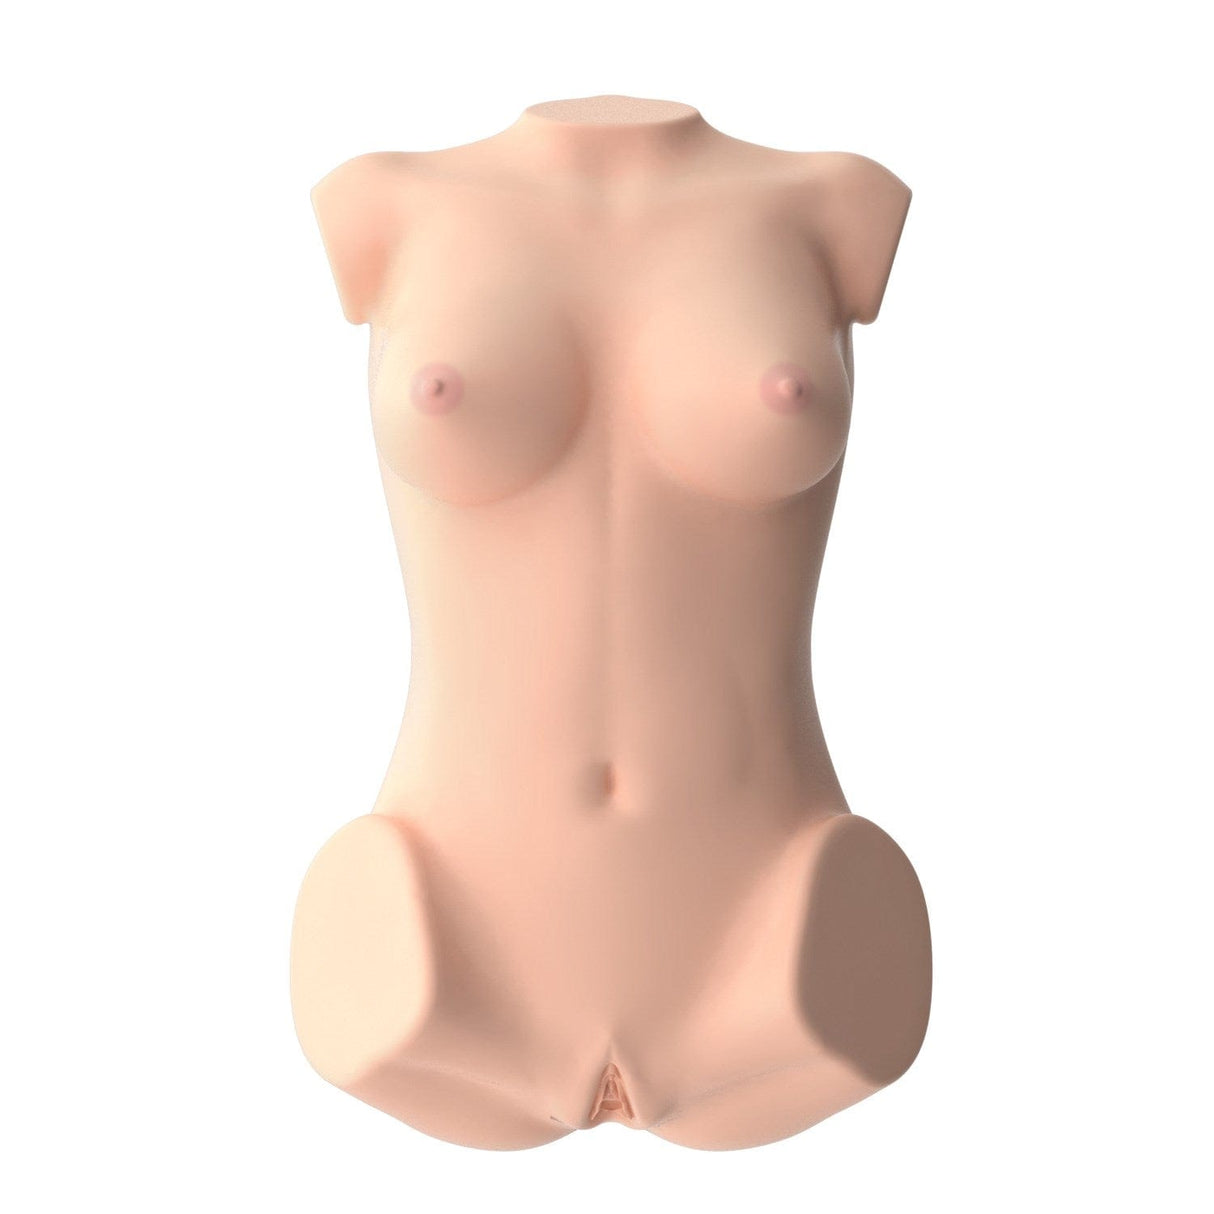 SSI Japan - Real Body 3D Bone System D Cup Yura Anekawa Masturbator Doll 11kg    Doll